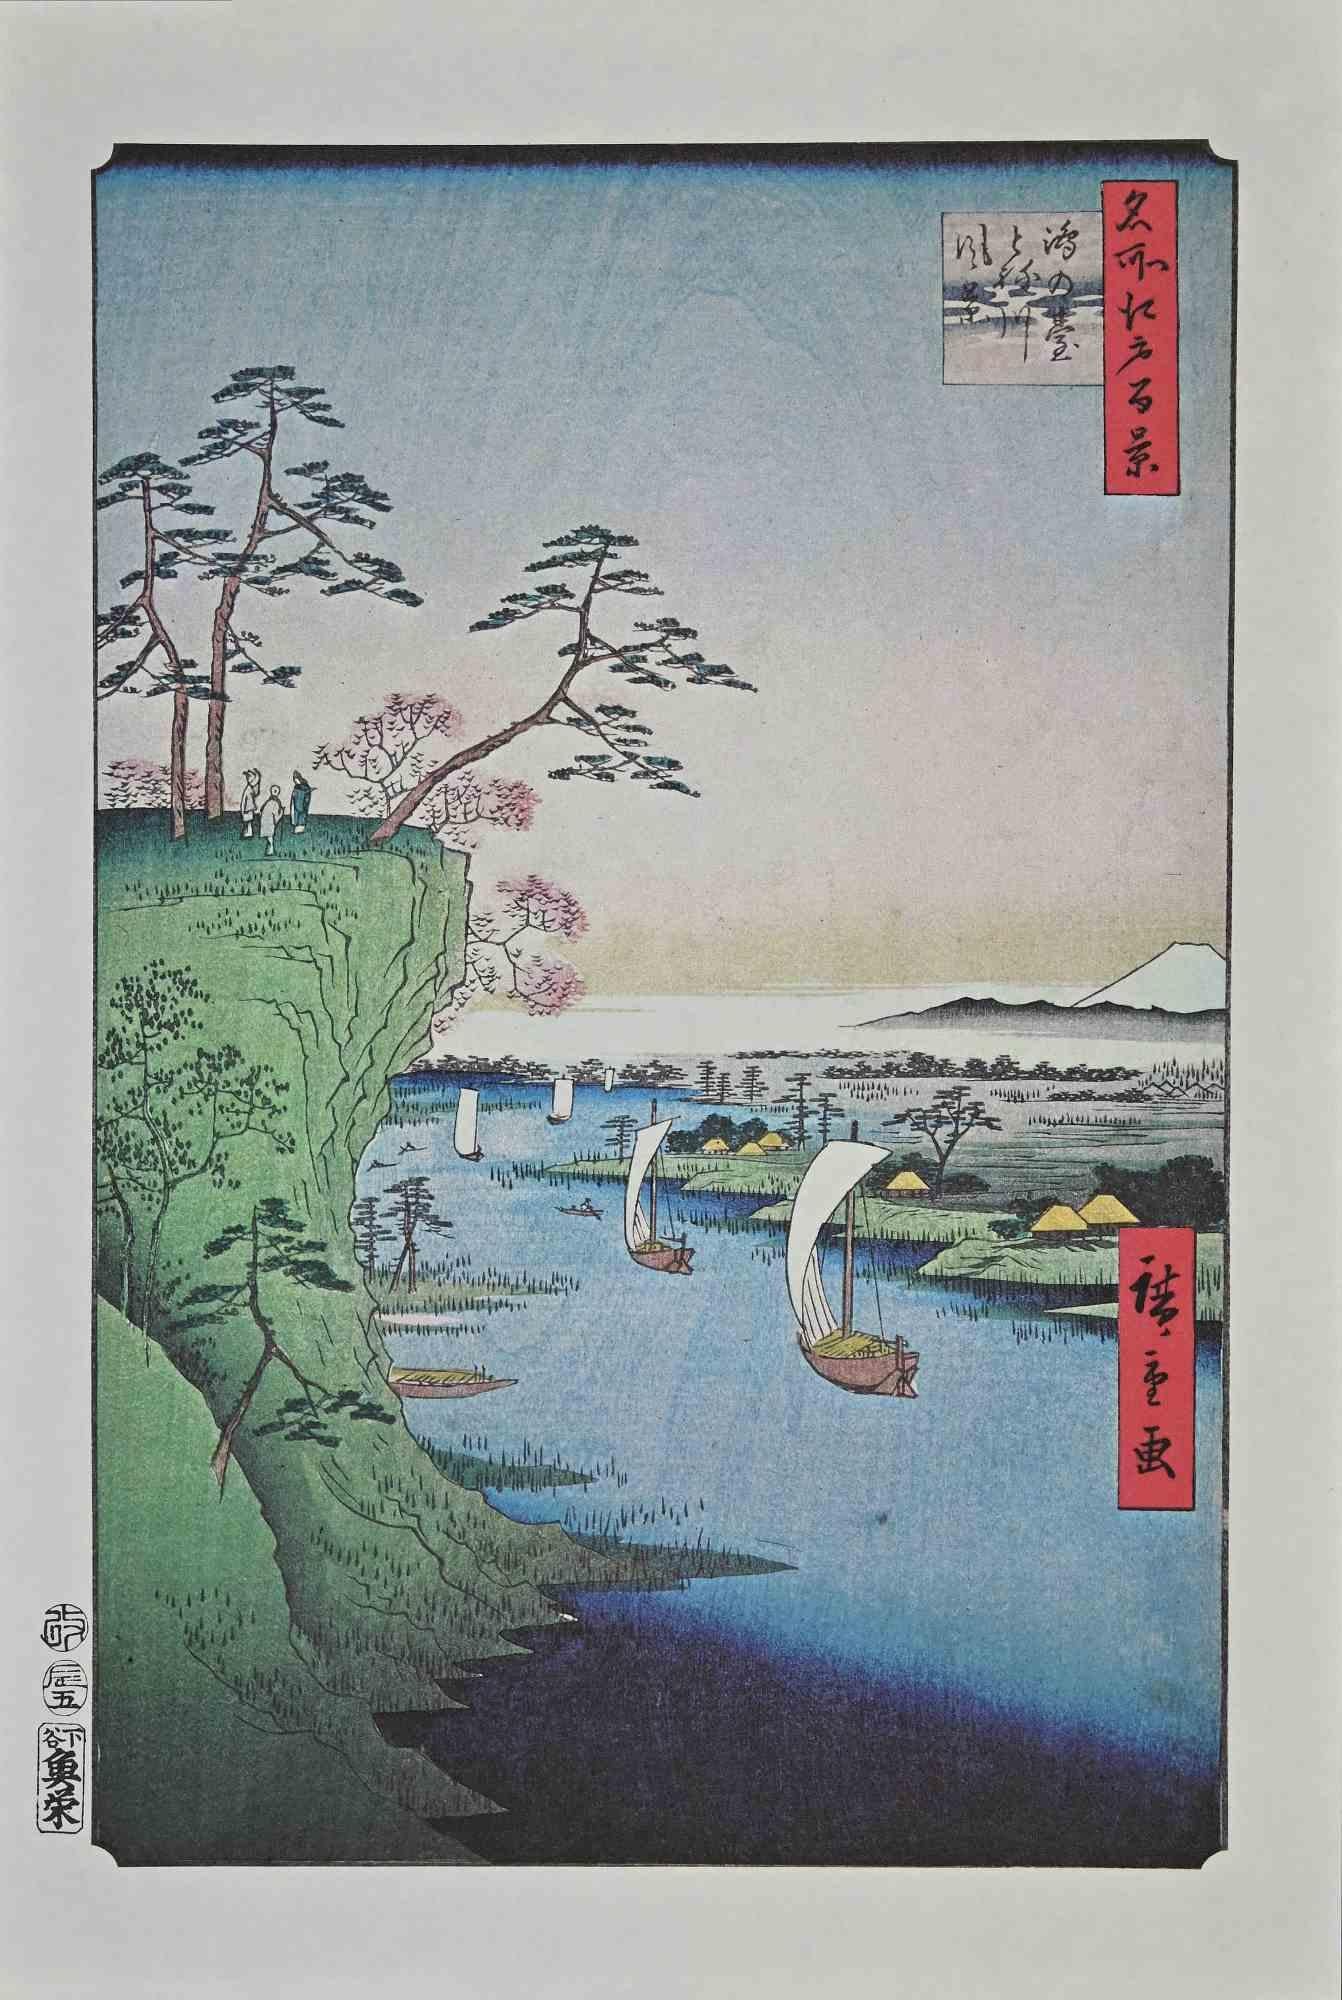 La mer et les bateaux est une œuvre d'art moderne réalisée au milieu du 20e siècle.

Lithographie en couleurs mixtes d'après une gravure sur bois réalisée par le grand artiste japonais Utagawa Hiroshige au XIXe siècle.

Très bonnes